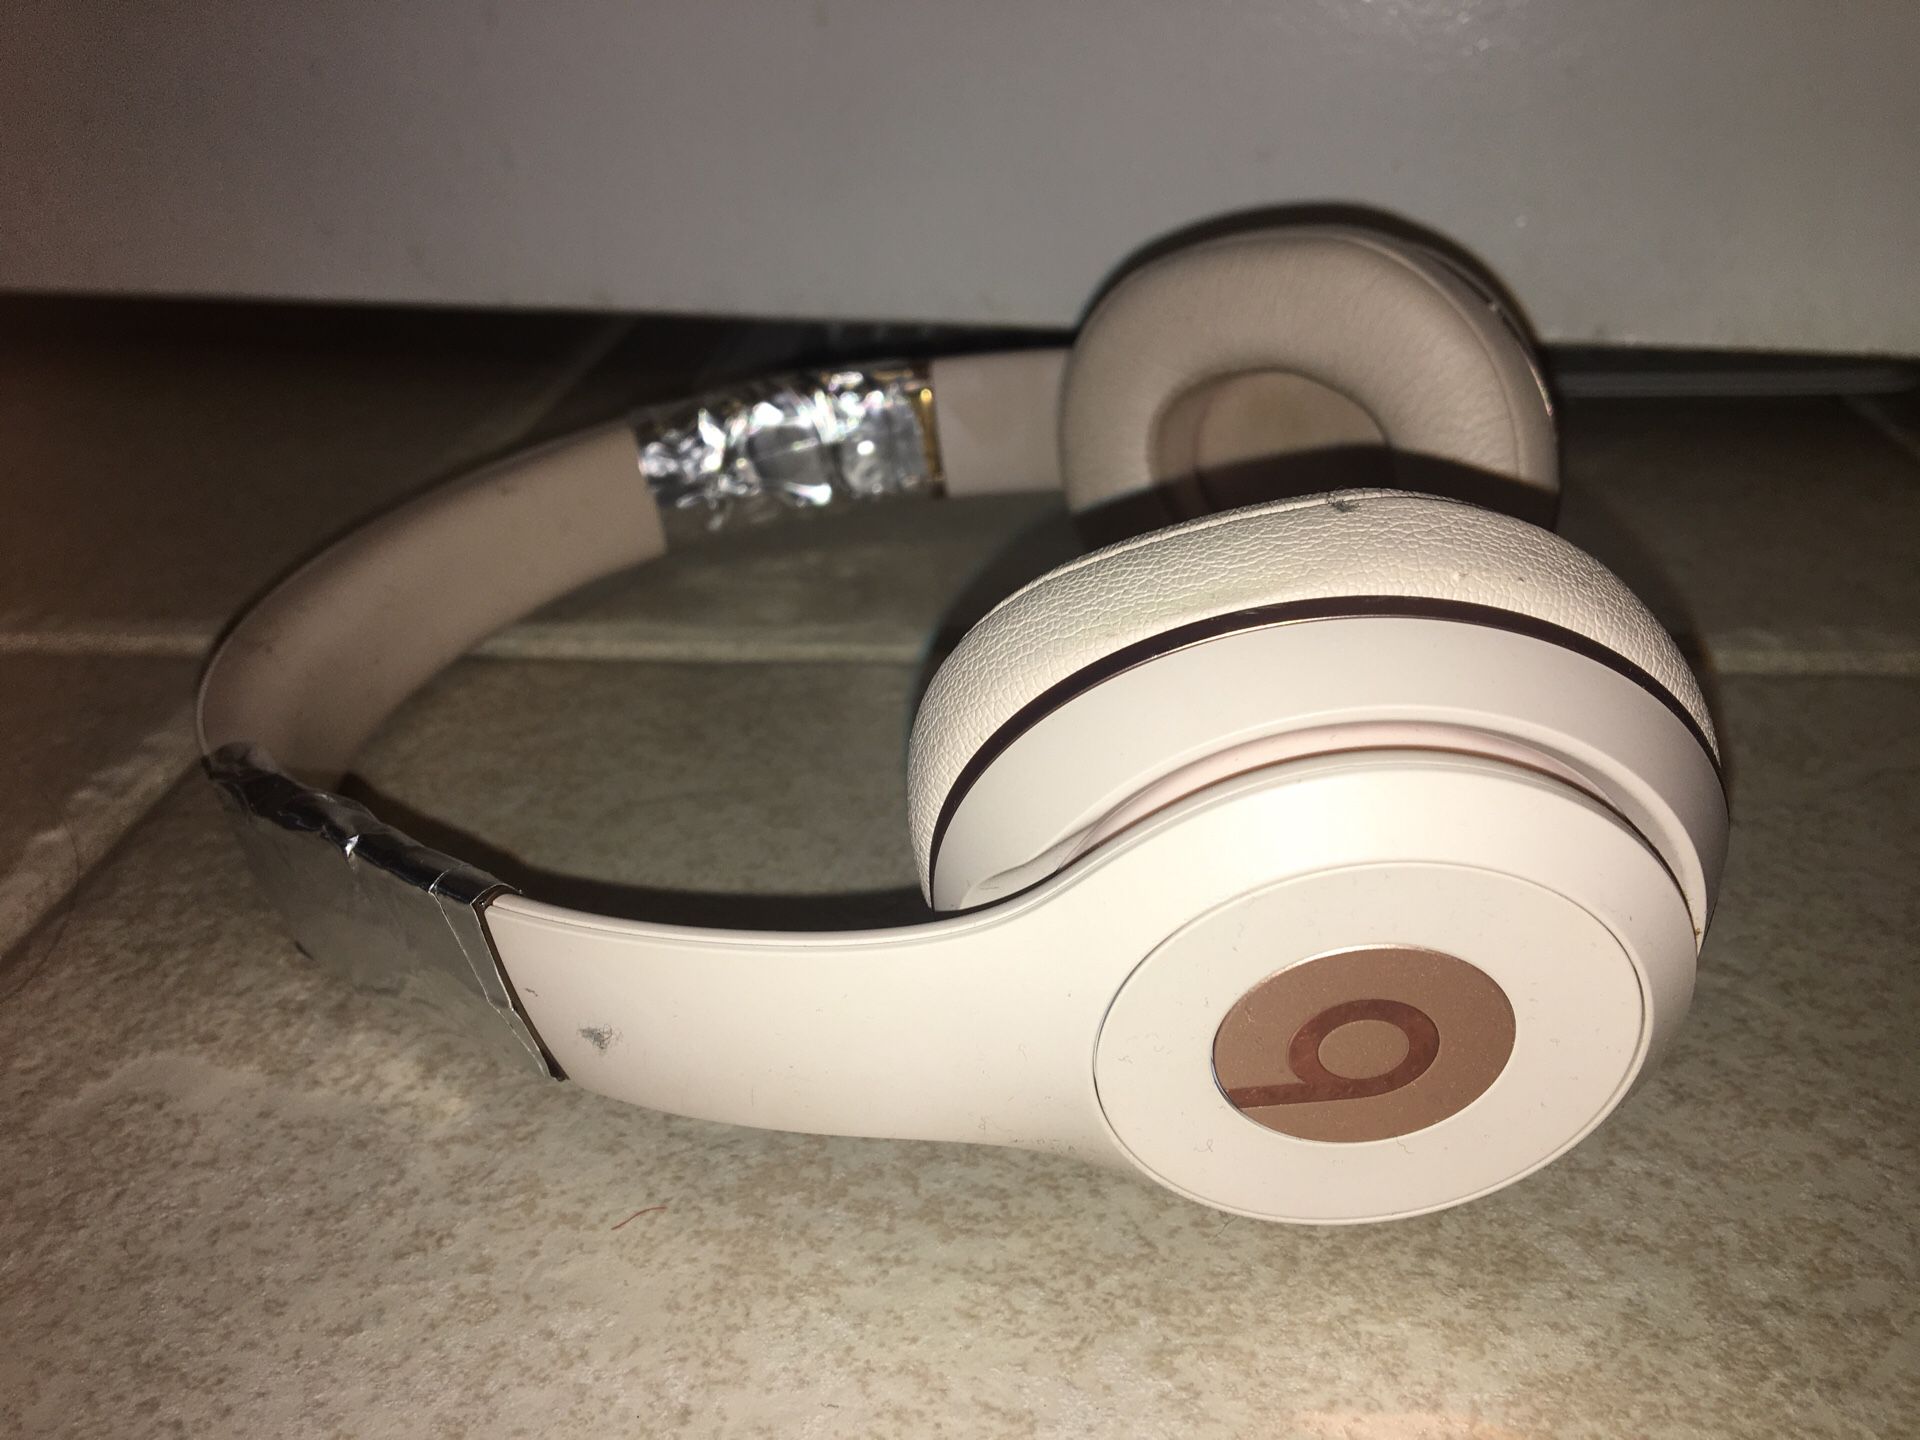 Rose Gold Beats Solo3 Wireless On-Ear Headphones